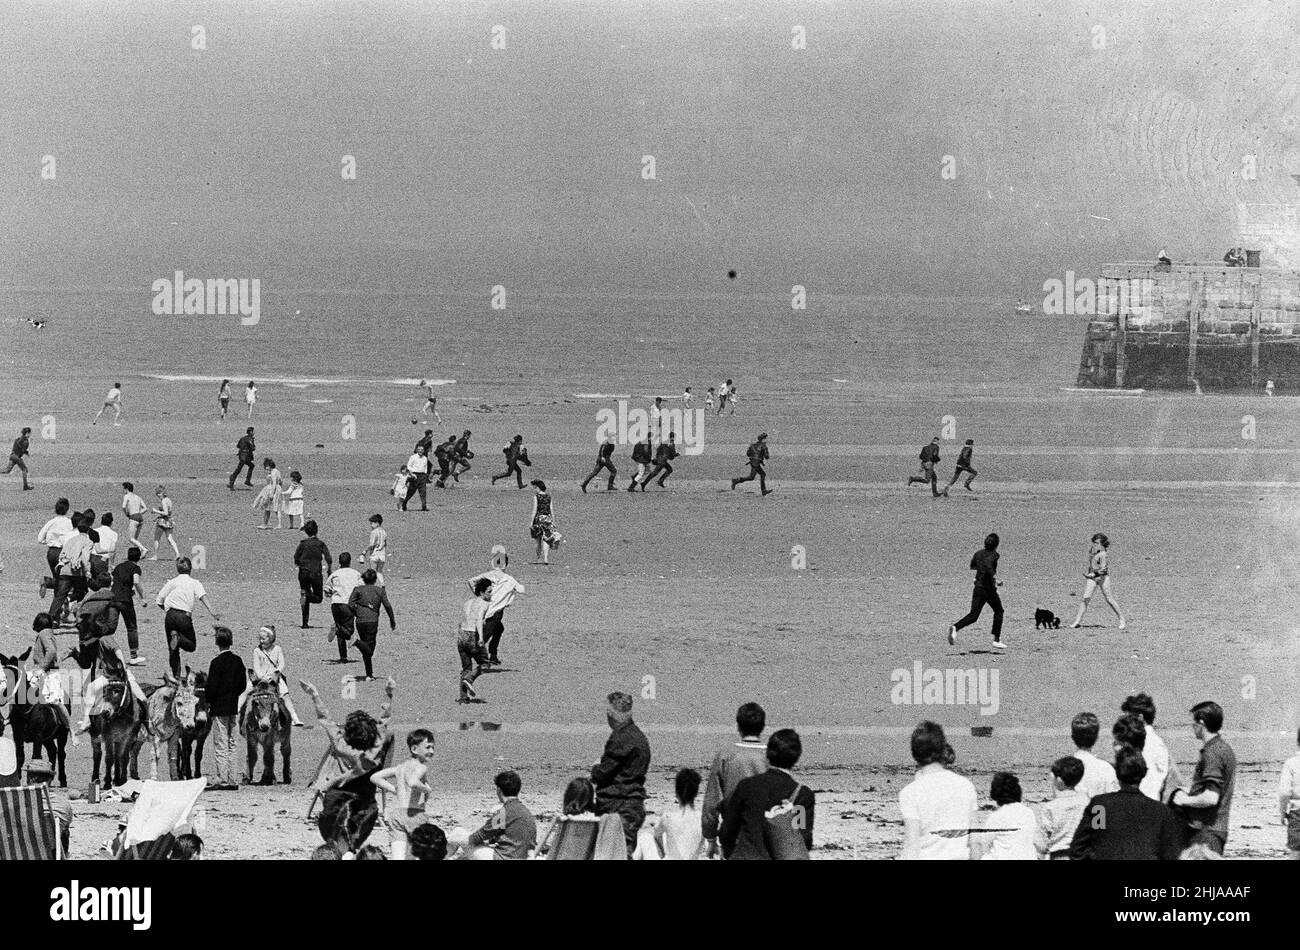 Mods gegen Rockers. Bild zeigt die Szene in Margate, North East Kent im Mai 1964. Mods jagen die Rockers über den Strand. Bild aufgenommen am 17th. Mai 1964 Stockfoto